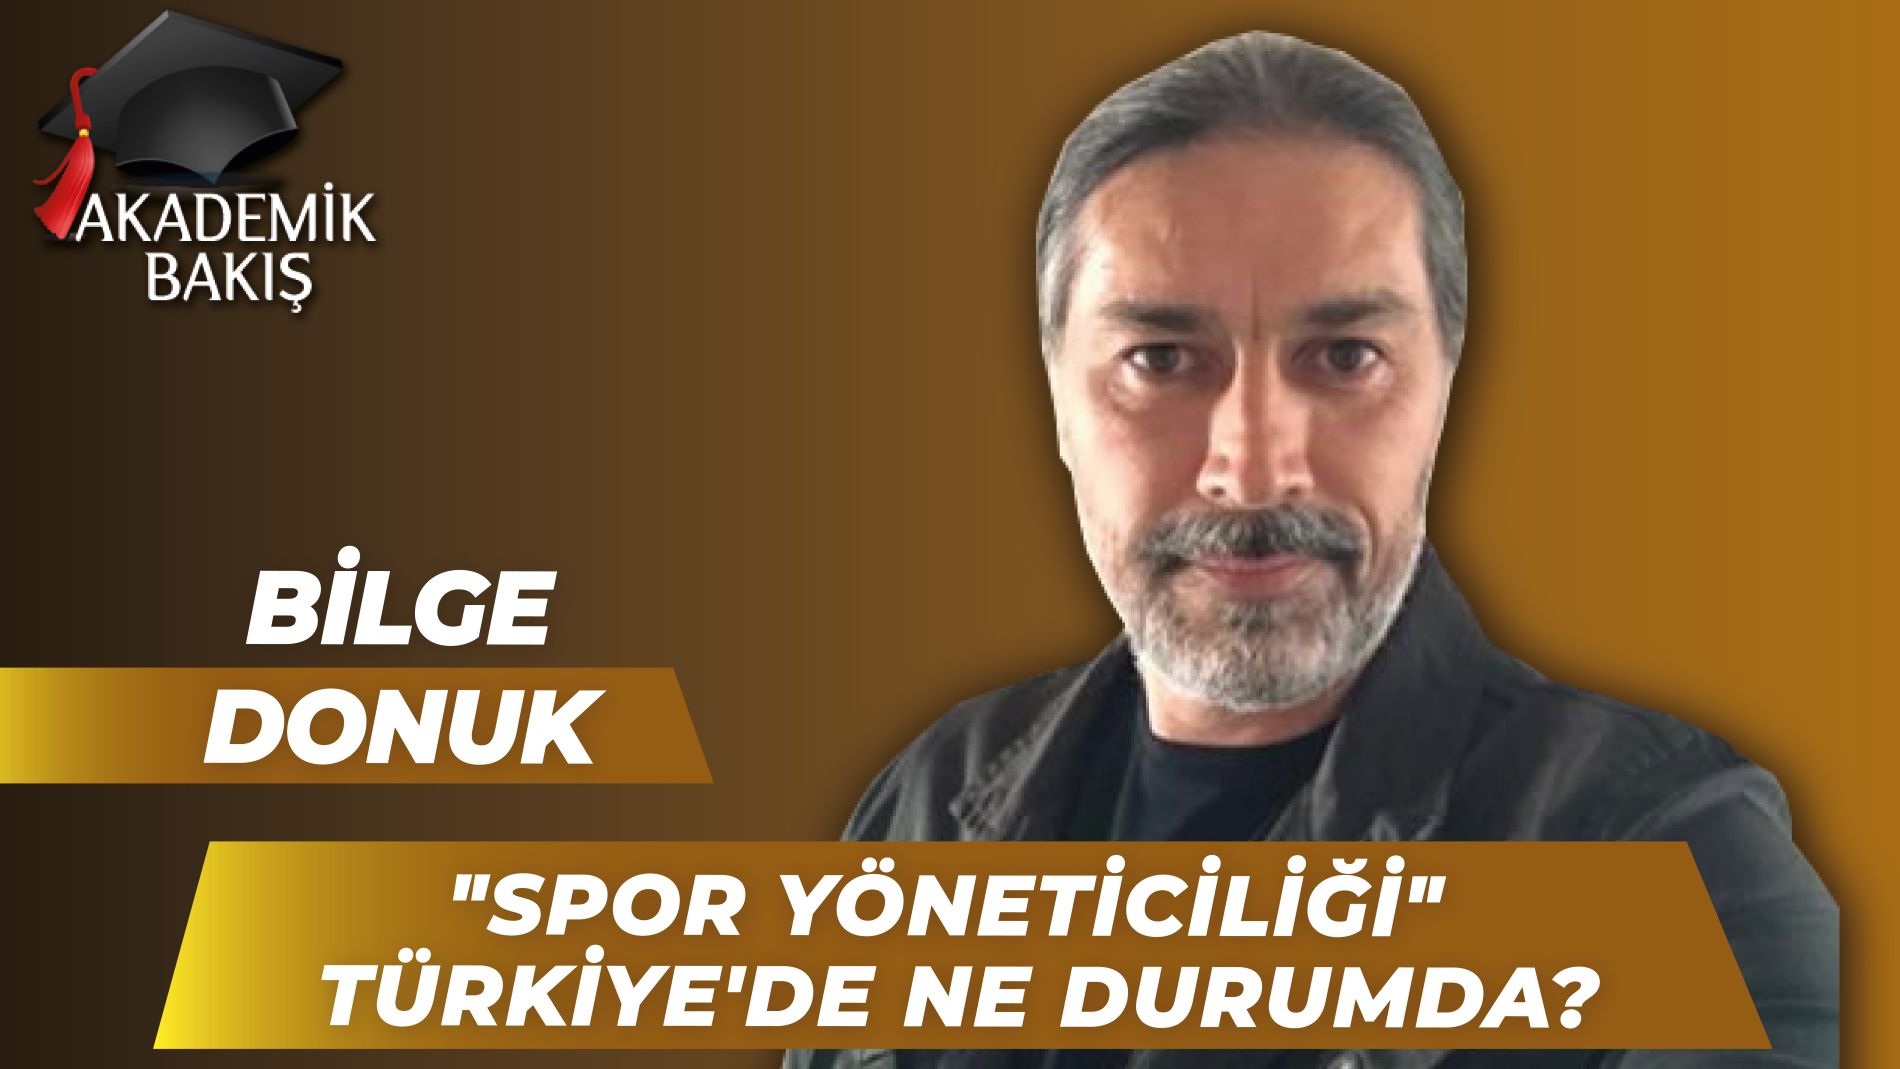 İstanbul Üniversitesi Cerrahpaşa Prof. Dr. Bilge Donuk Spor Yöneticiliği Kavramını Anlattı